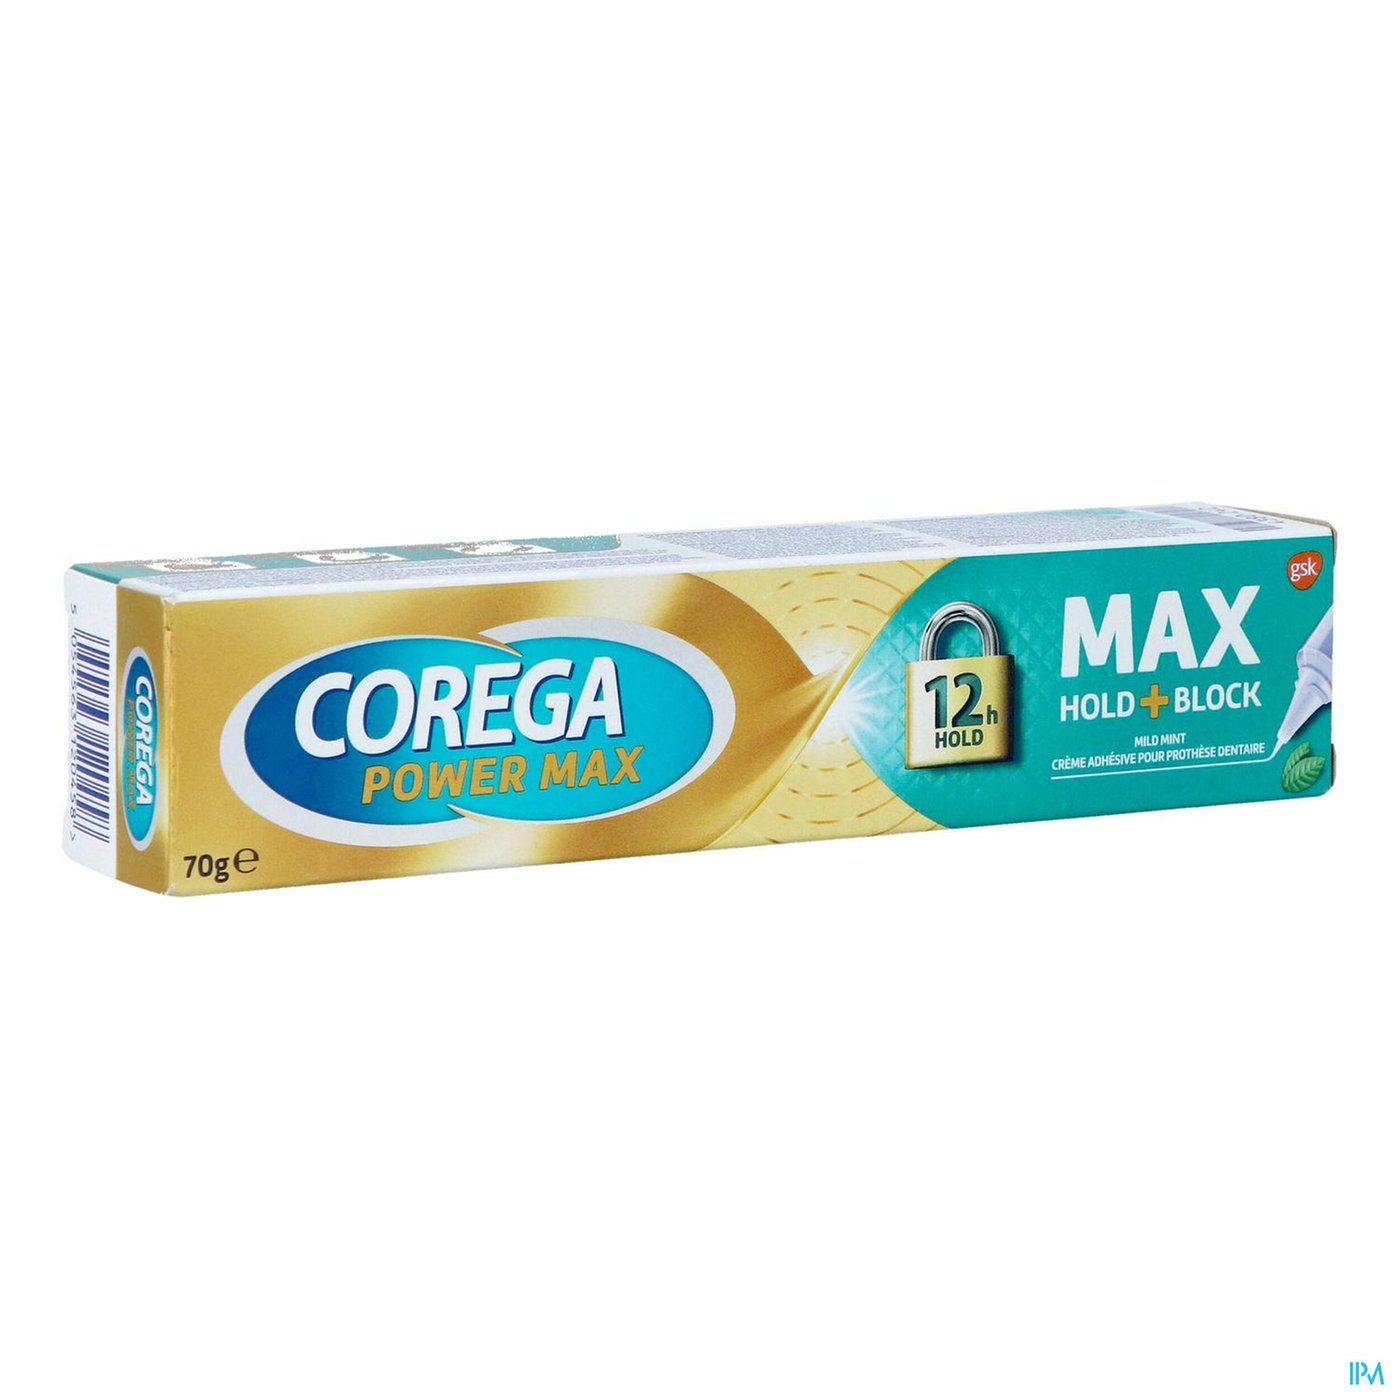 Corega Max Mint Tube 70g packshot